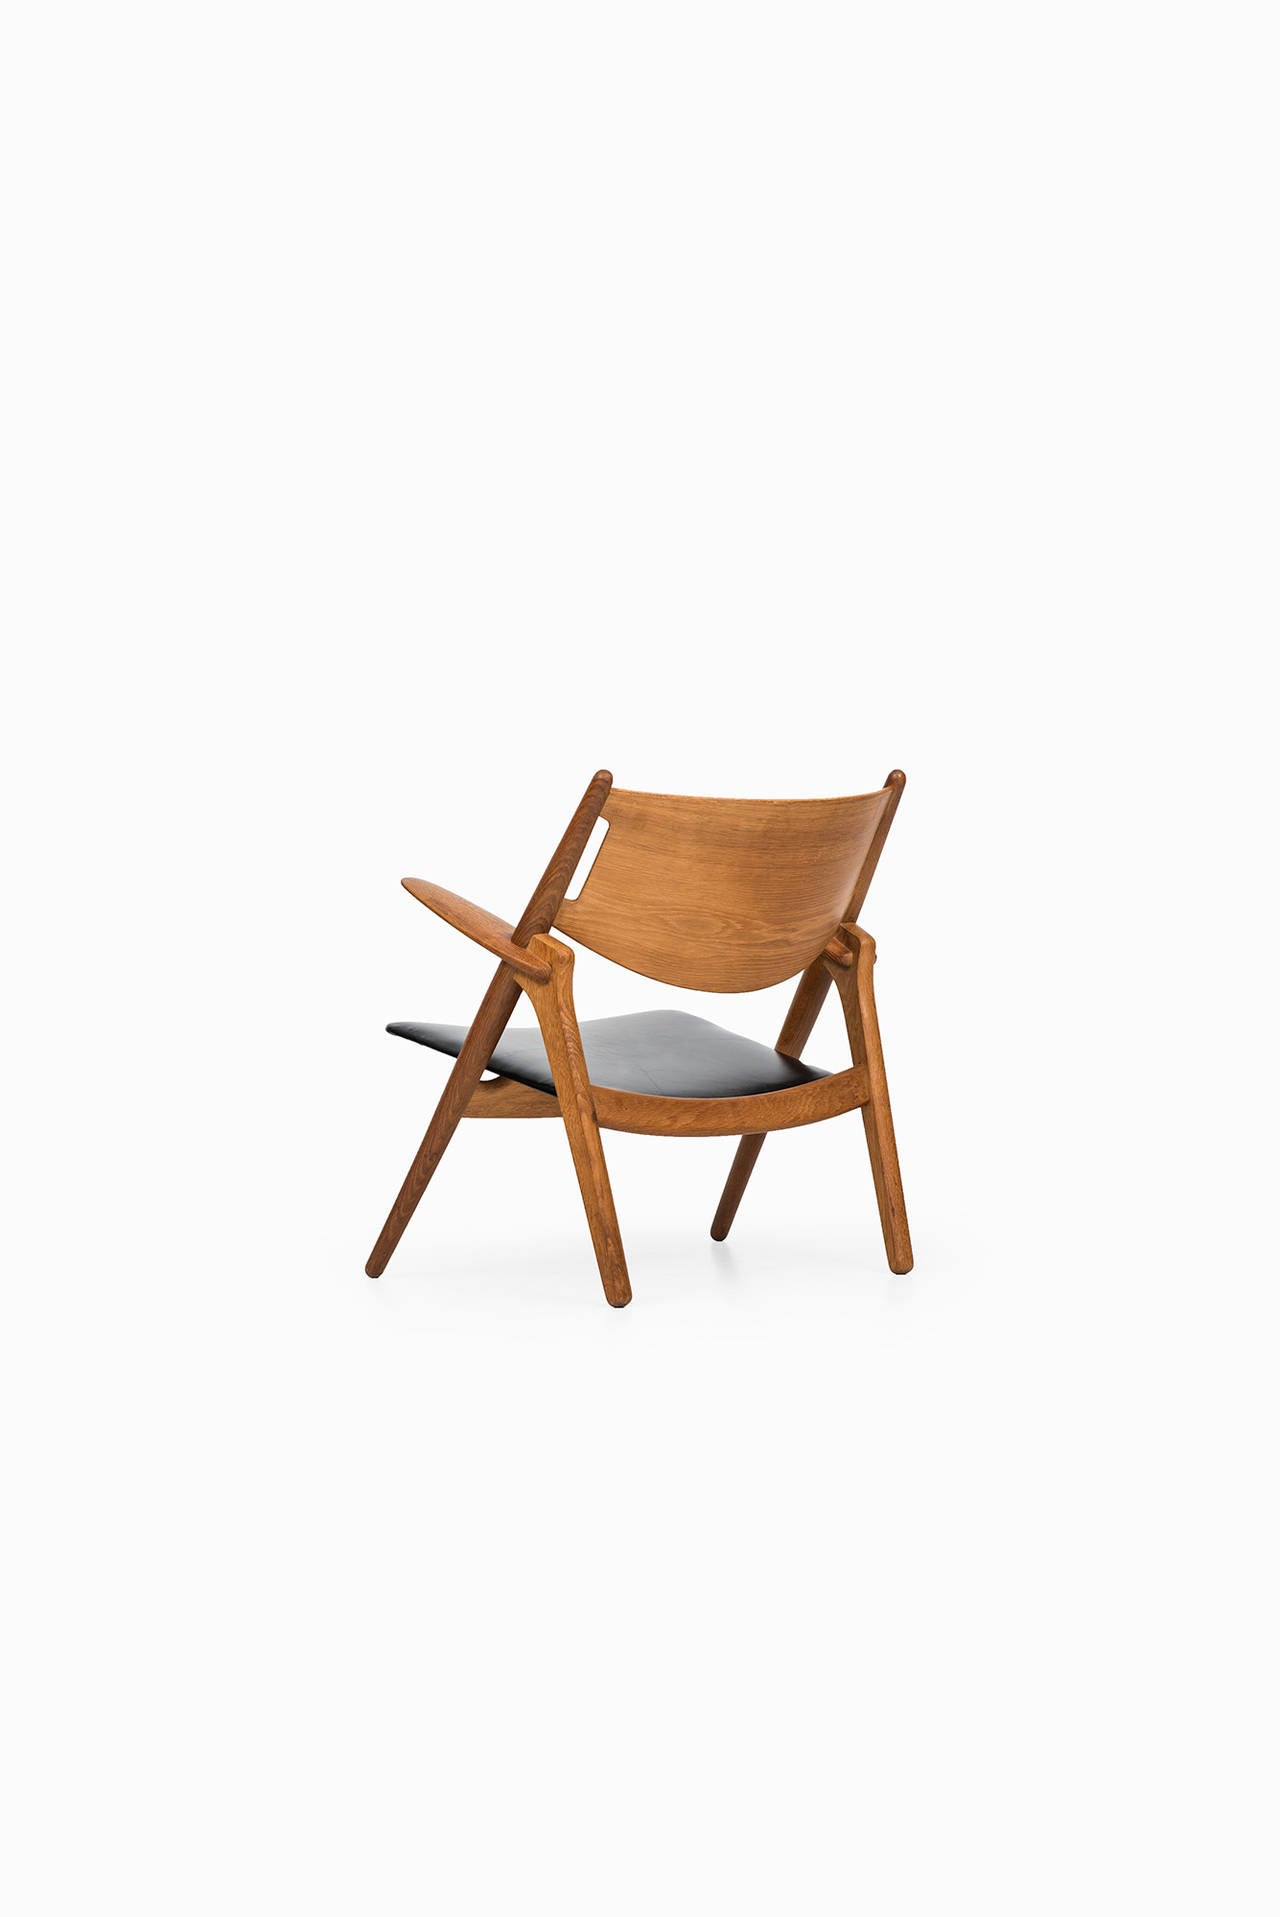 Mid-20th Century Hans Wegner Easy Chair, Model CH-28, Produced by Carl Hansen & Søn in Denmark